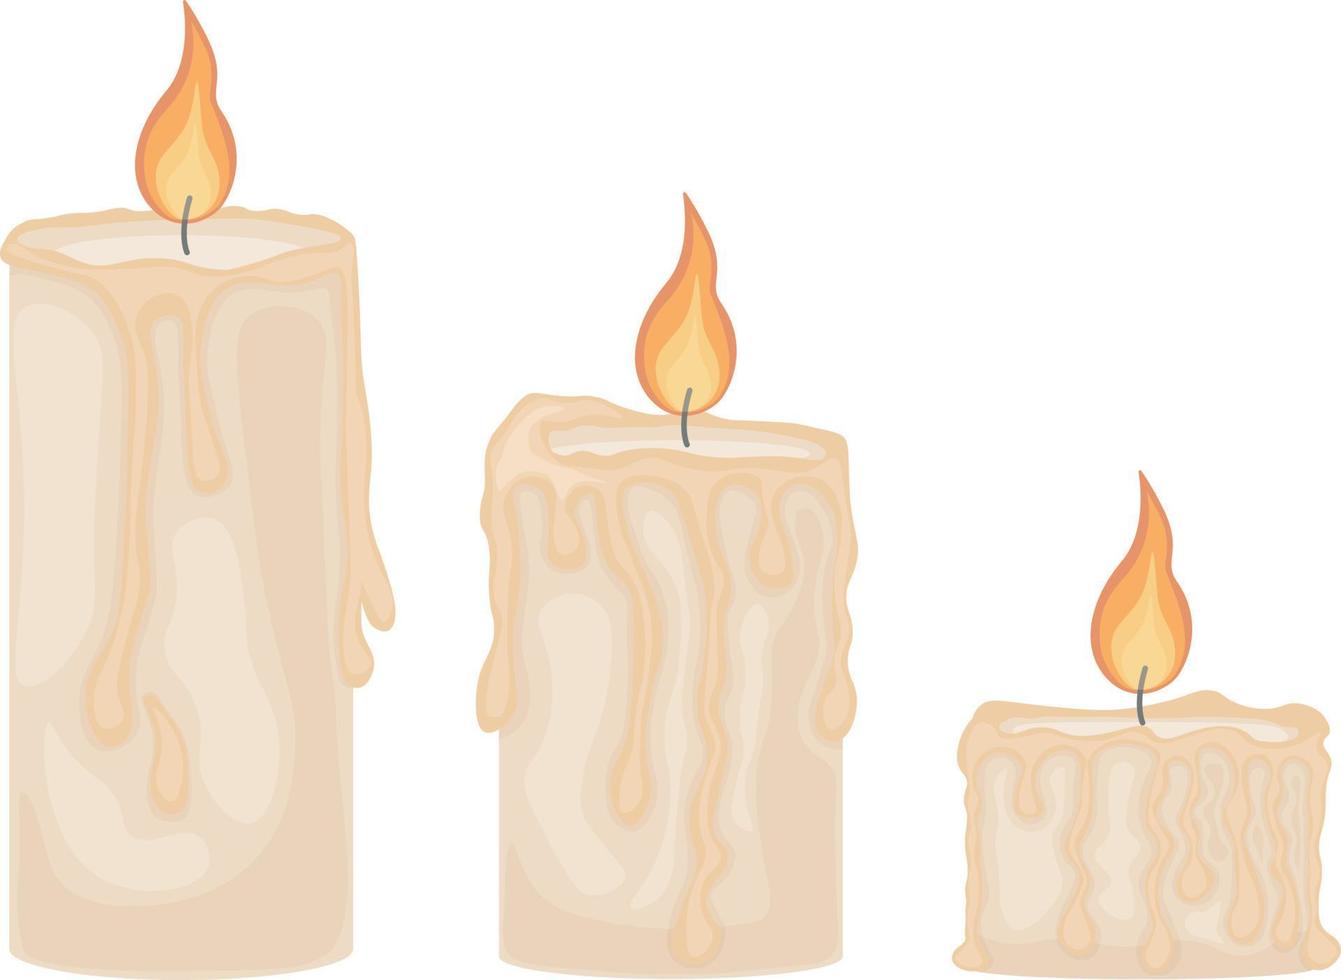 uma ilustração representando três românticas velas acesas. velas de cera de vários tamanhos. três chamas de vela, ilustração vetorial isolada em um fundo branco vetor